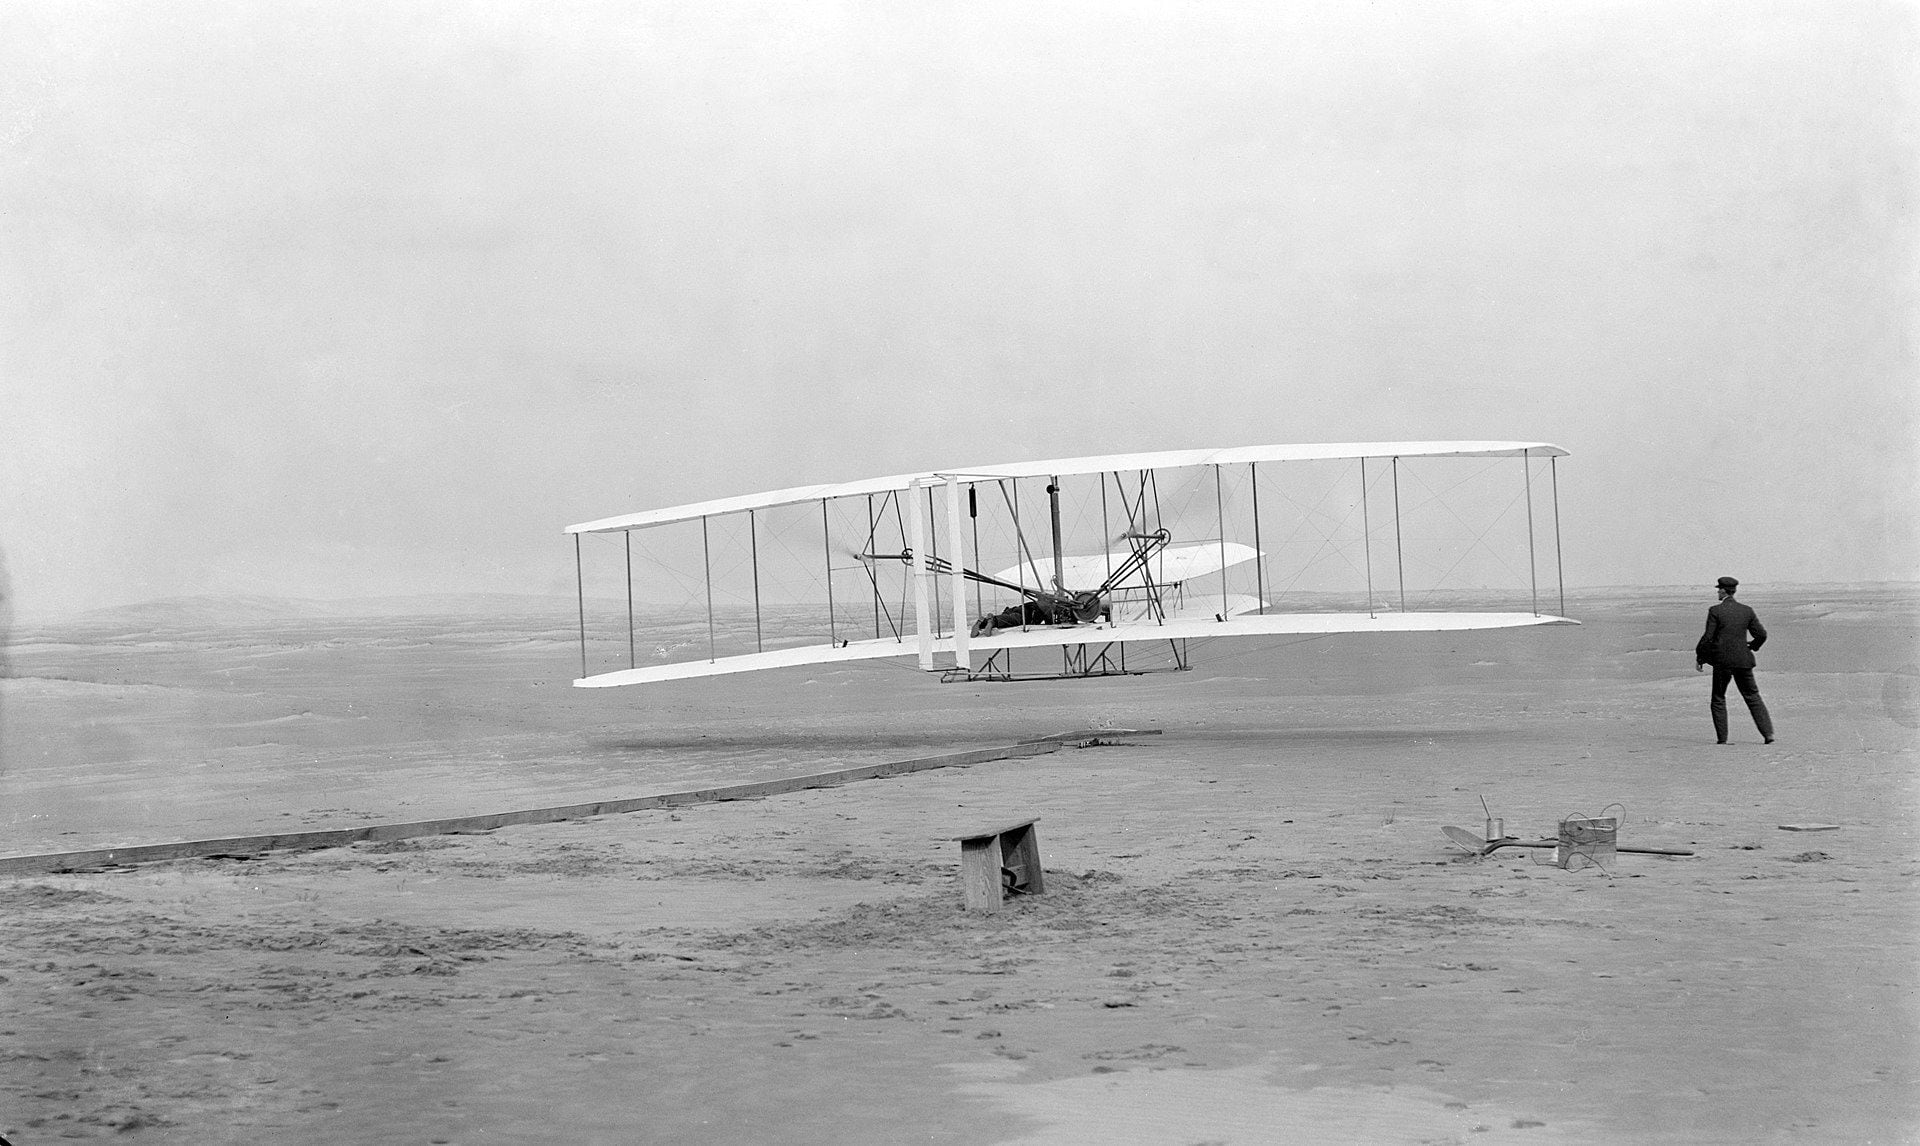 Con el primer vuelo con motor de la historia, el 17 de diciembre de 1903, Orville Wright (der.) pensó que podría traer paz al mundo. 
(Biblioteca del Congreso de los Estados Unidos).
